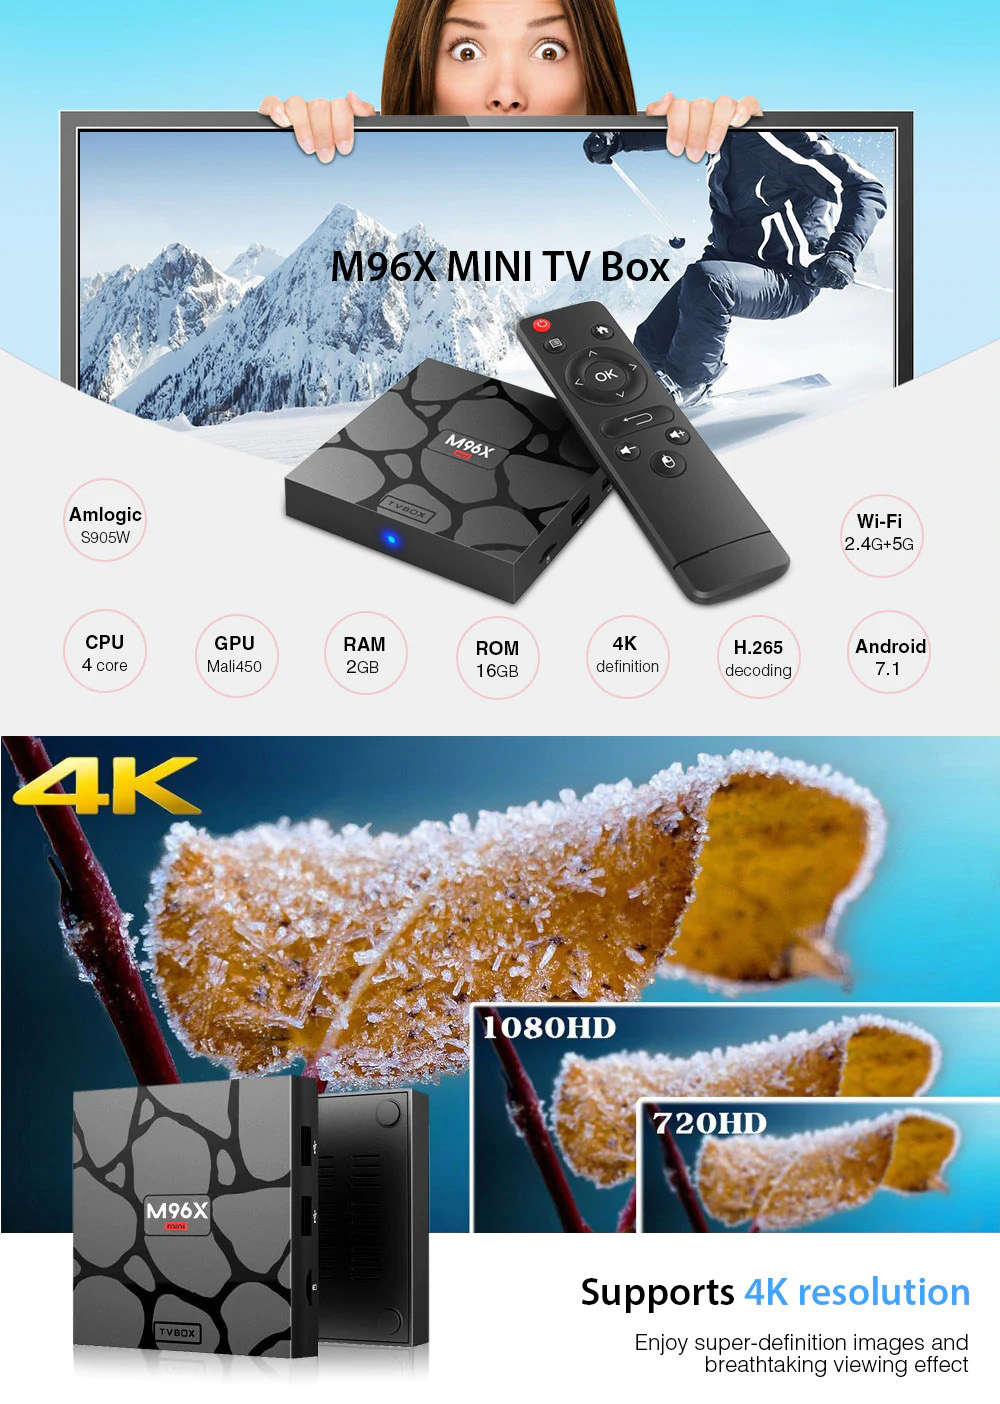 m96x mini tv box